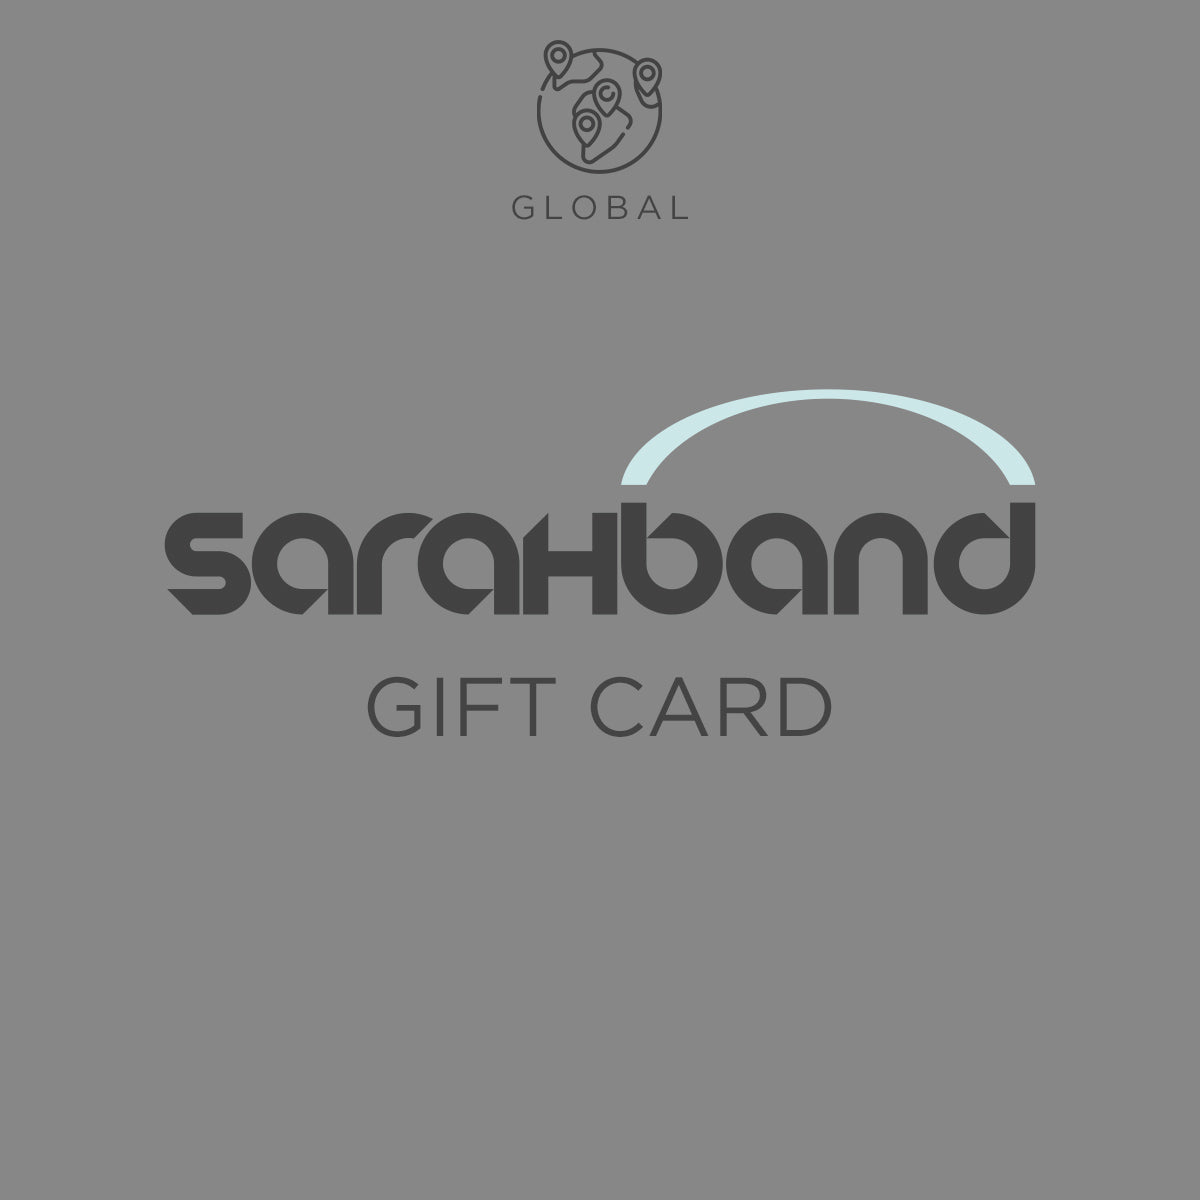 Sarahband Gift Card - Global